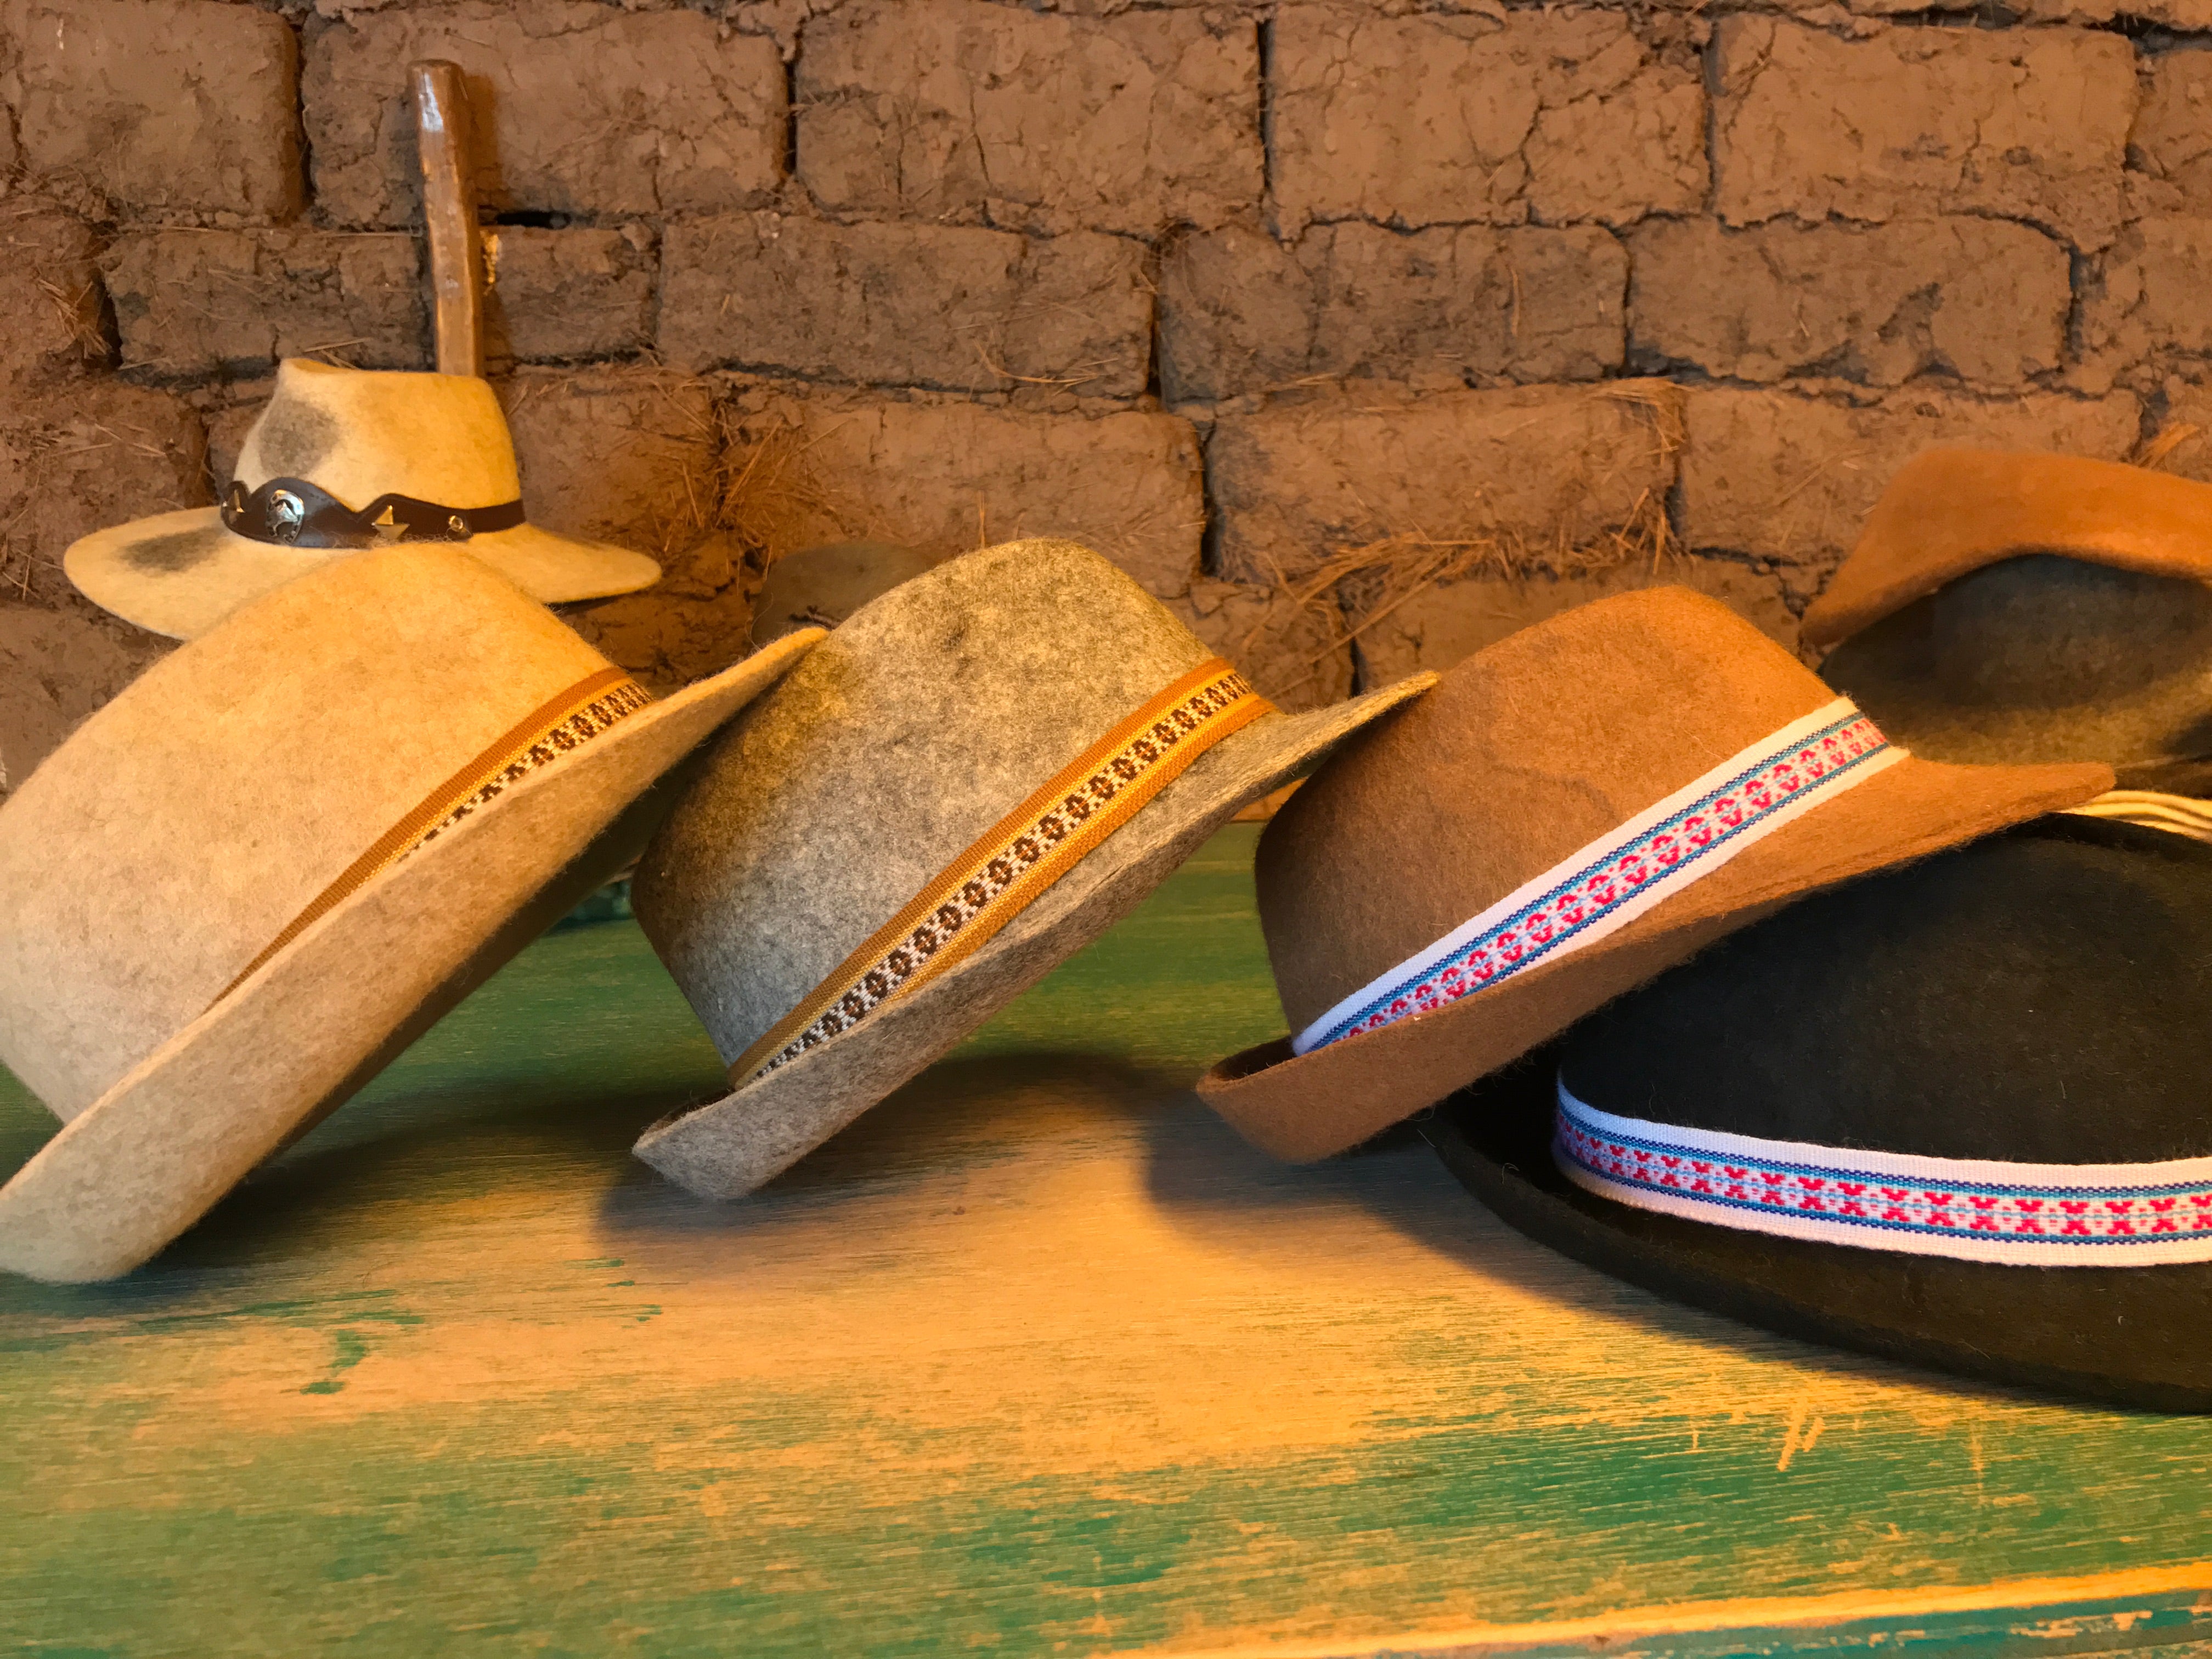 Shop Cowboy Hat Accessories online